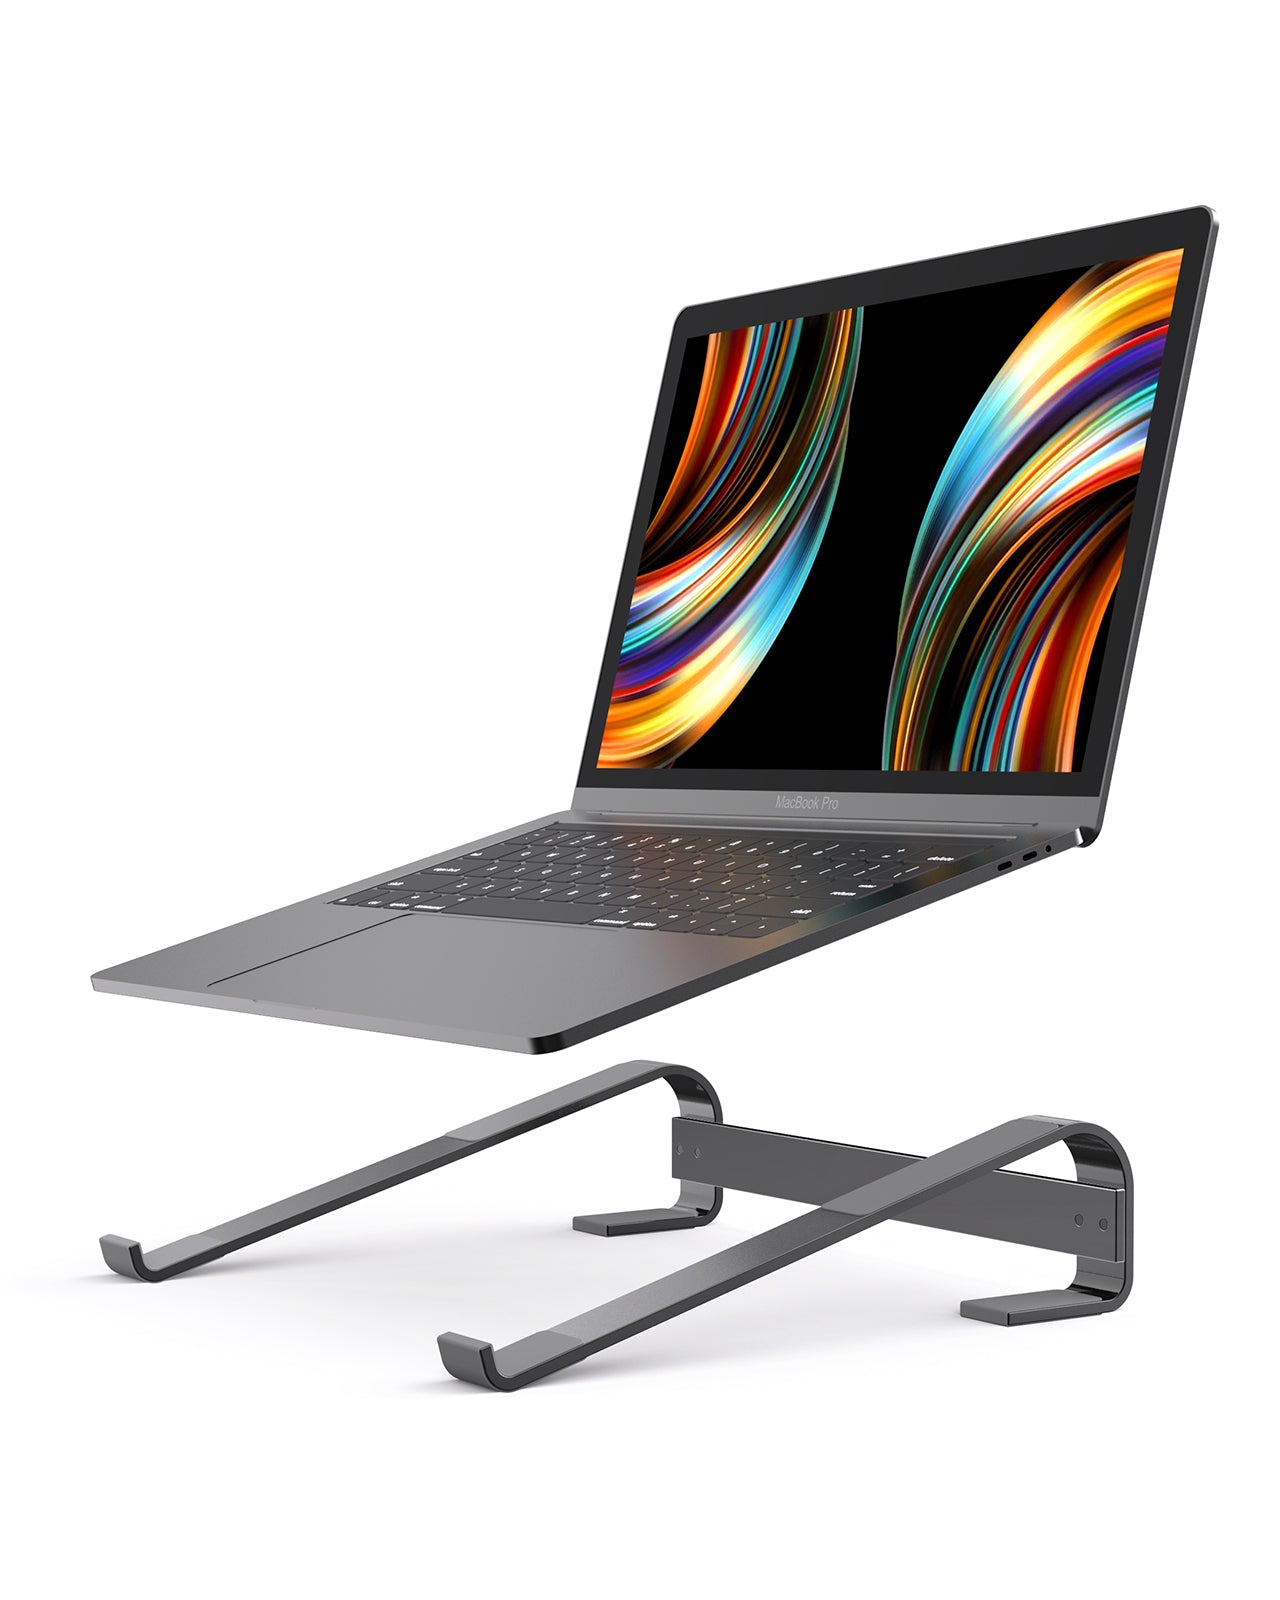 RAINBEAN Aluminum Laptop Stand - Your Ergonomic Computing Solution